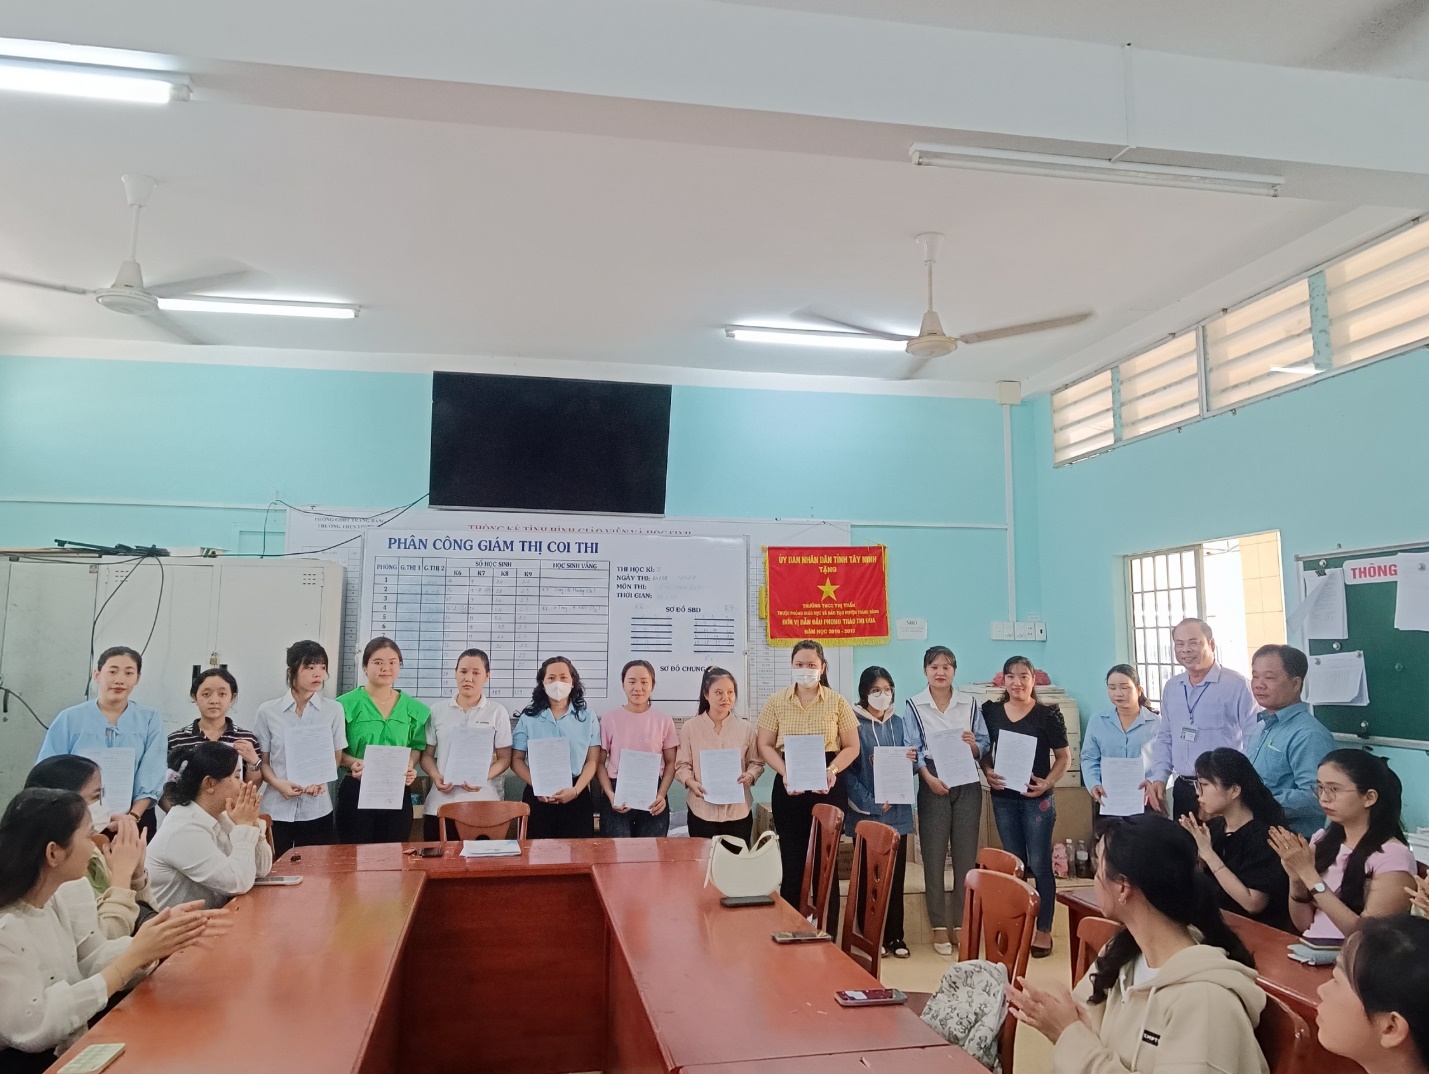  Ông Huỳnh Thanh Hải - Trưởng phòng Giáo dục và Đào tạo thị xã Trảng Bàng trao quyết định